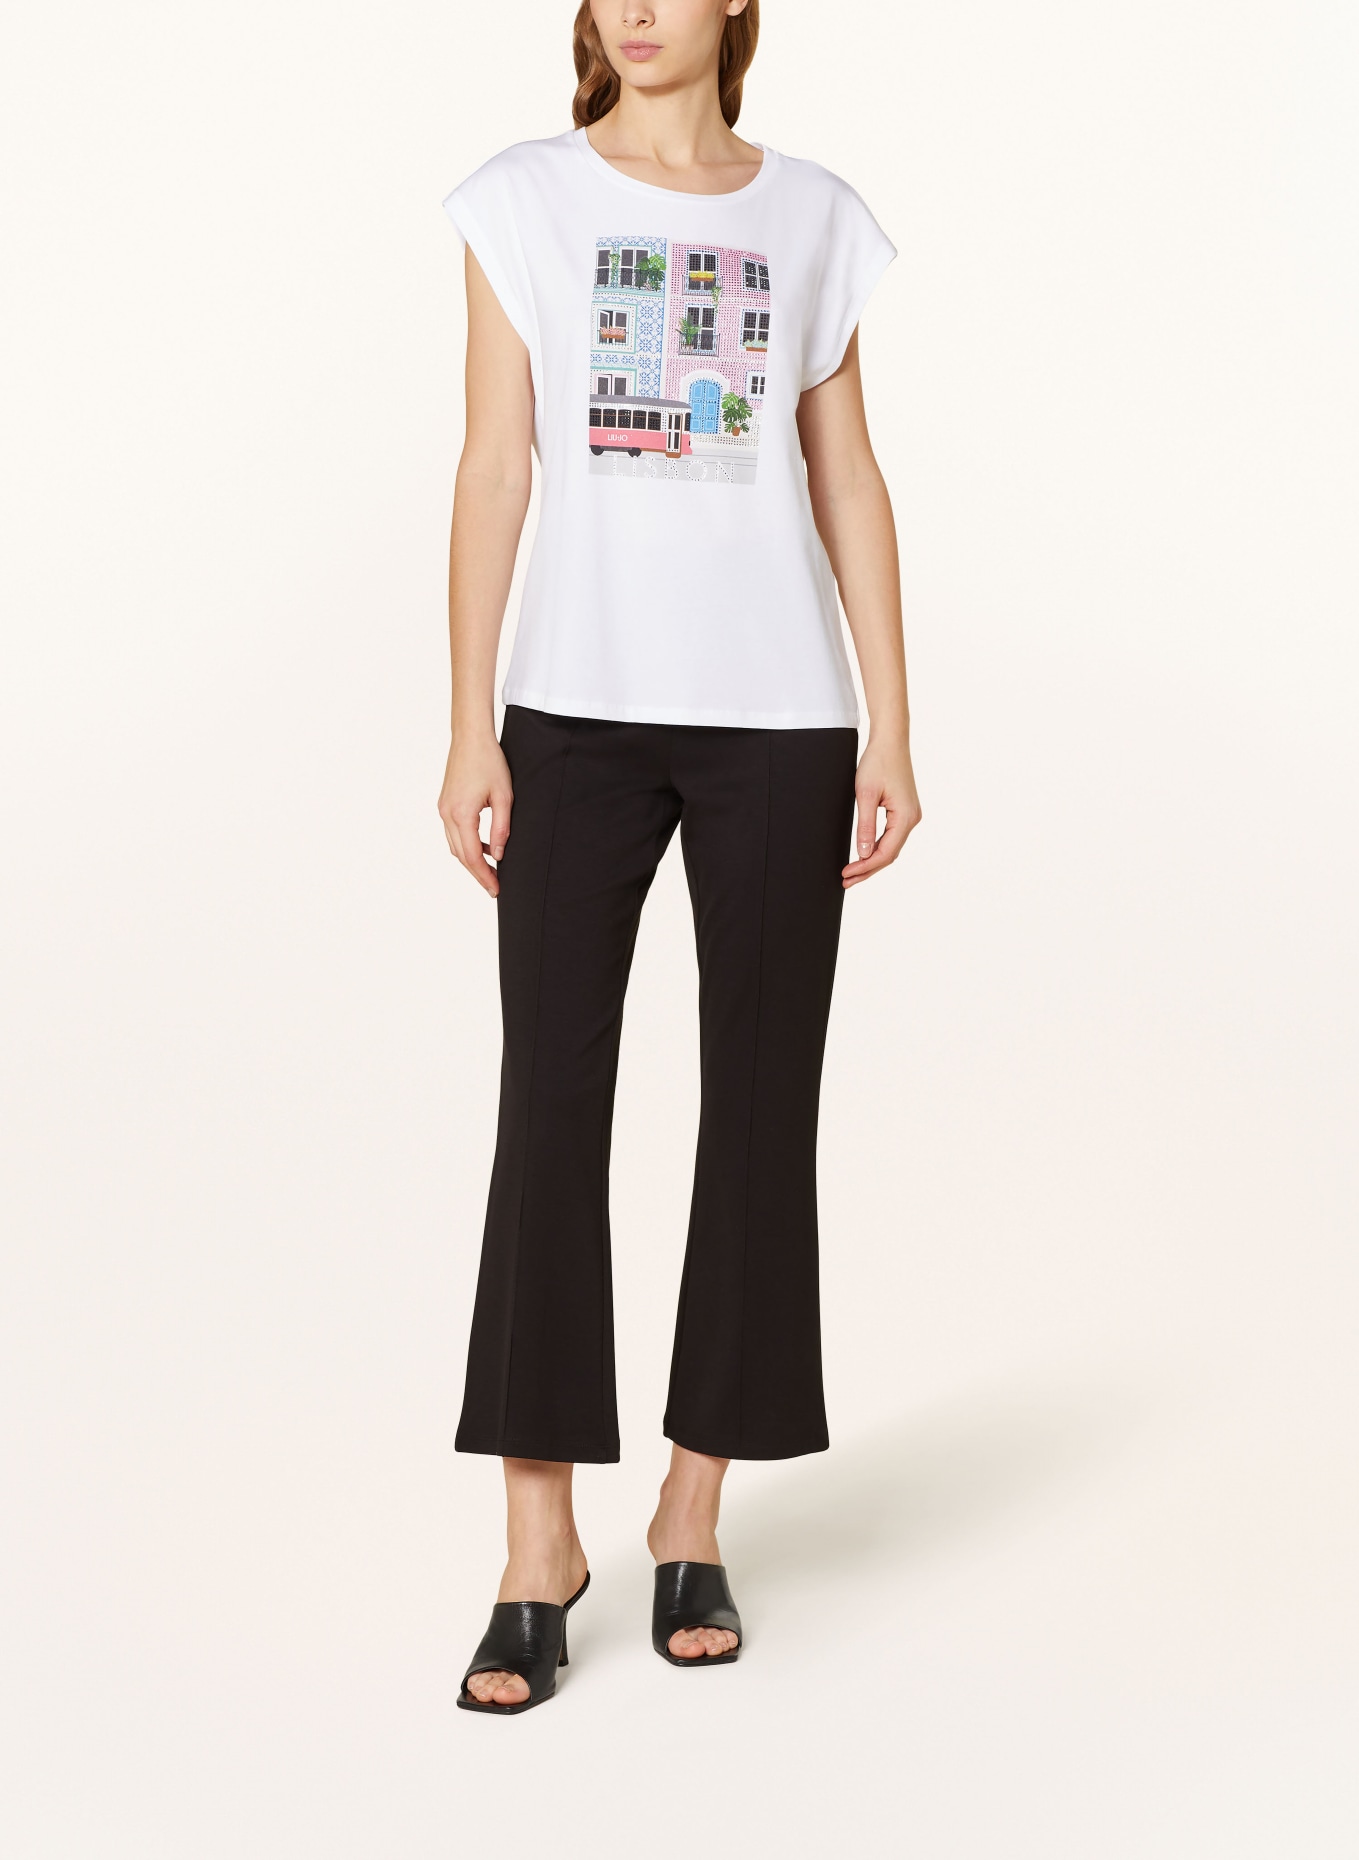 LIU JO T-Shirt LISBON mit Schmucksteinen, Farbe: WEISS/ ROSA/ GRÜN (Bild 2)